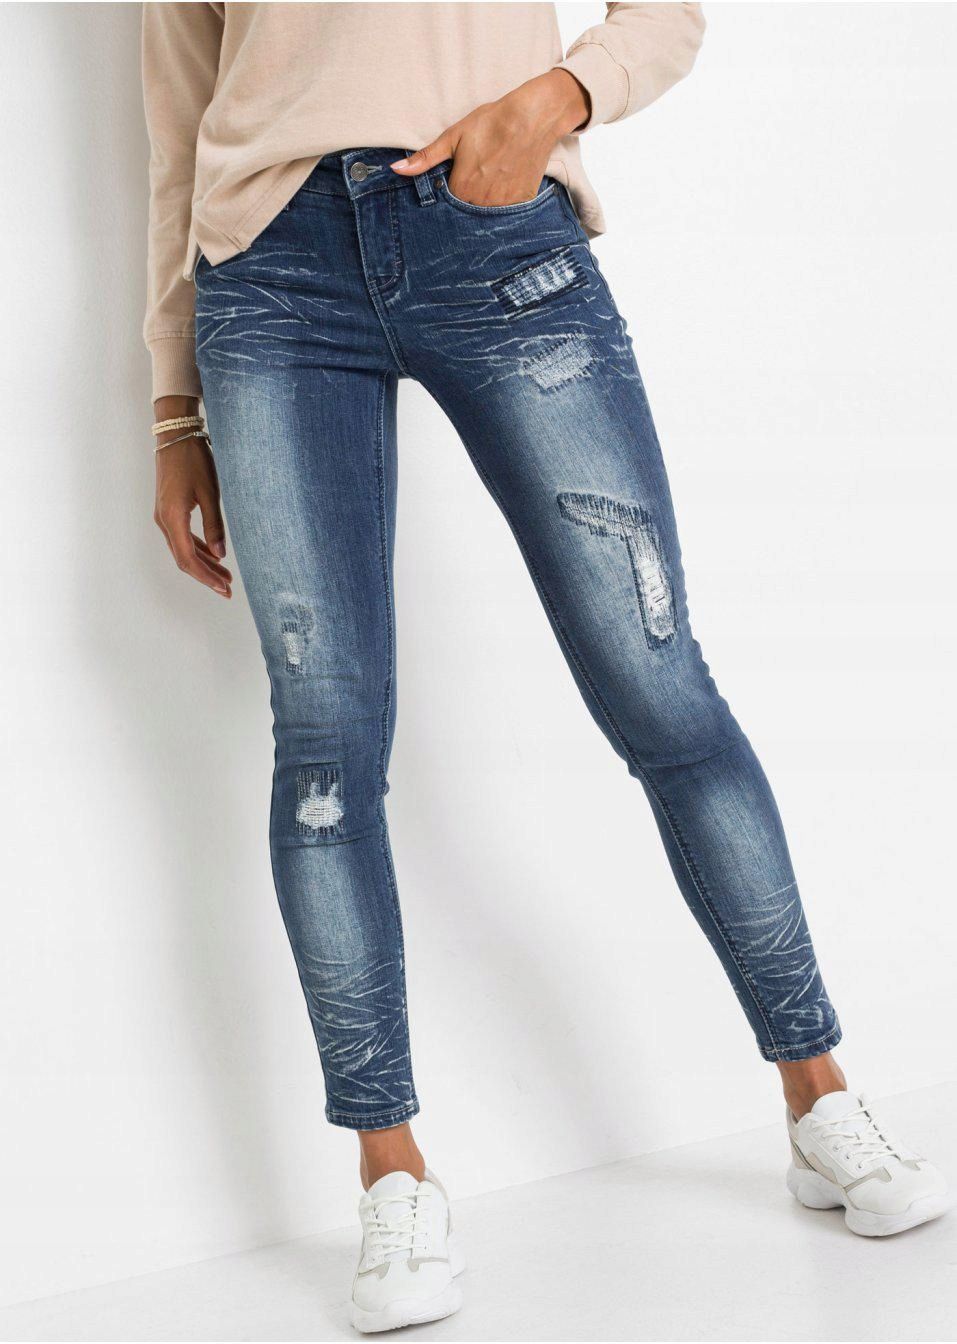 Mixed jeans. Джинсы разные модели. Bonprix джинсы скинни. Джинсы Бонприкс соответствие размеру. Как заказать джинсы Бонприкс.